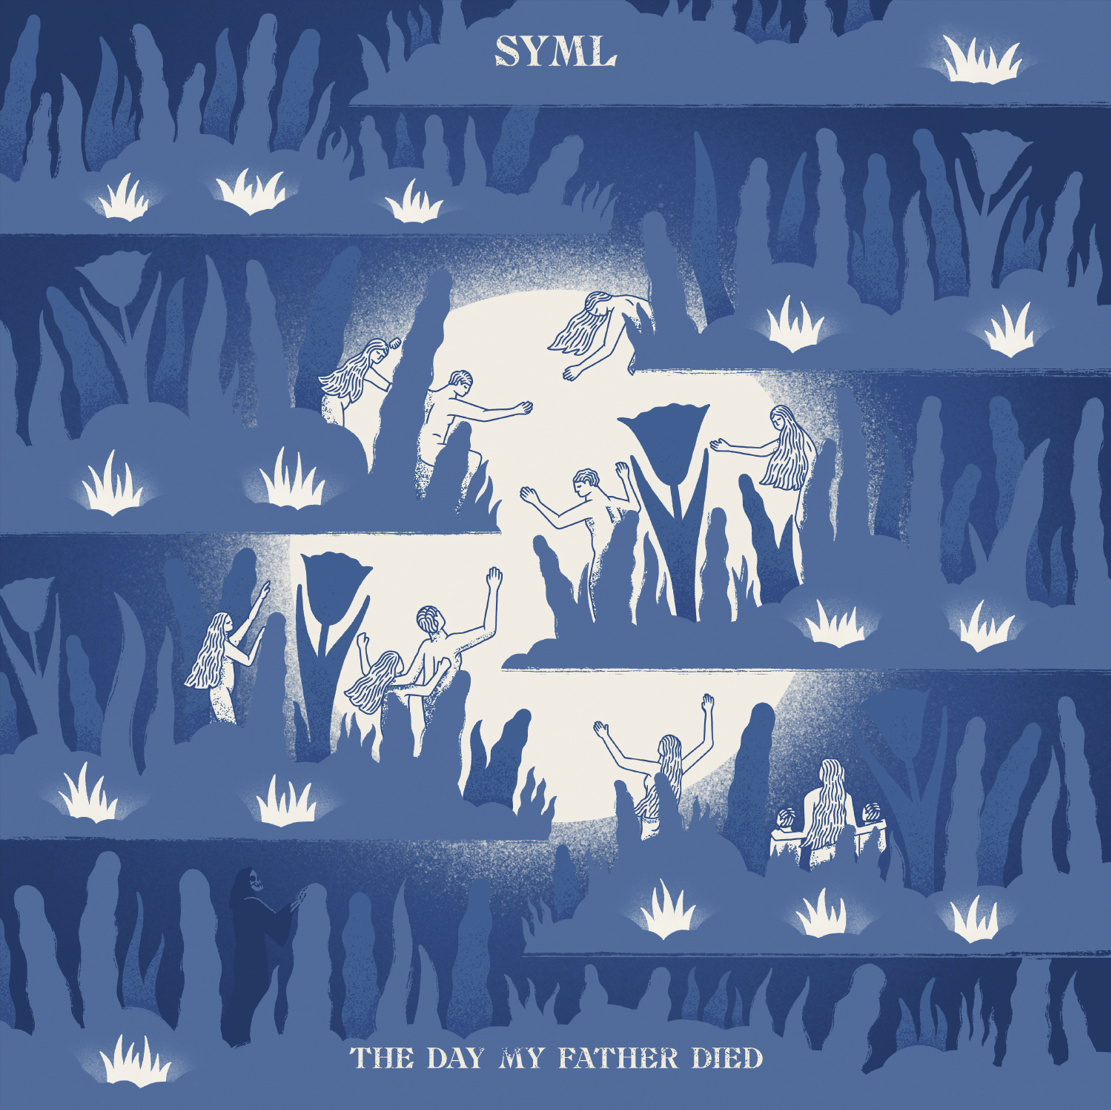 Das Albumcover "The Day My Father Died" von SYML zeigt eine Collage aus verschiedenen gemalten Menschen, die hinter Pflanzen stehen. Im Hintergrund ist der große Mond zu sehen. Das Cover ist blau und weiß.